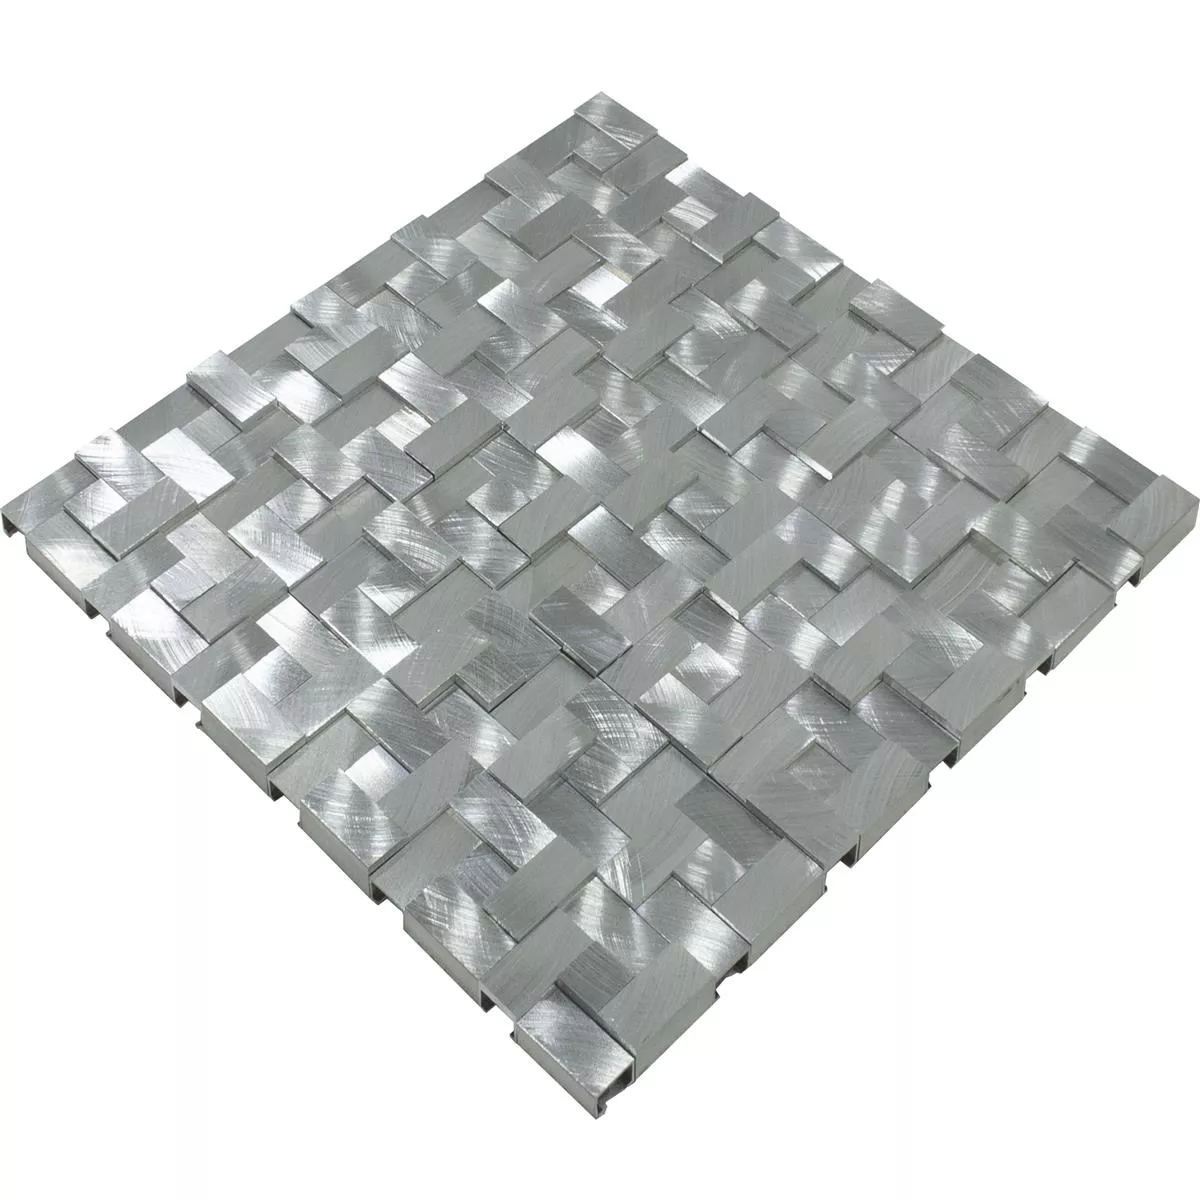 Campione Alluminio Metallo Mosaico Quantum Argento